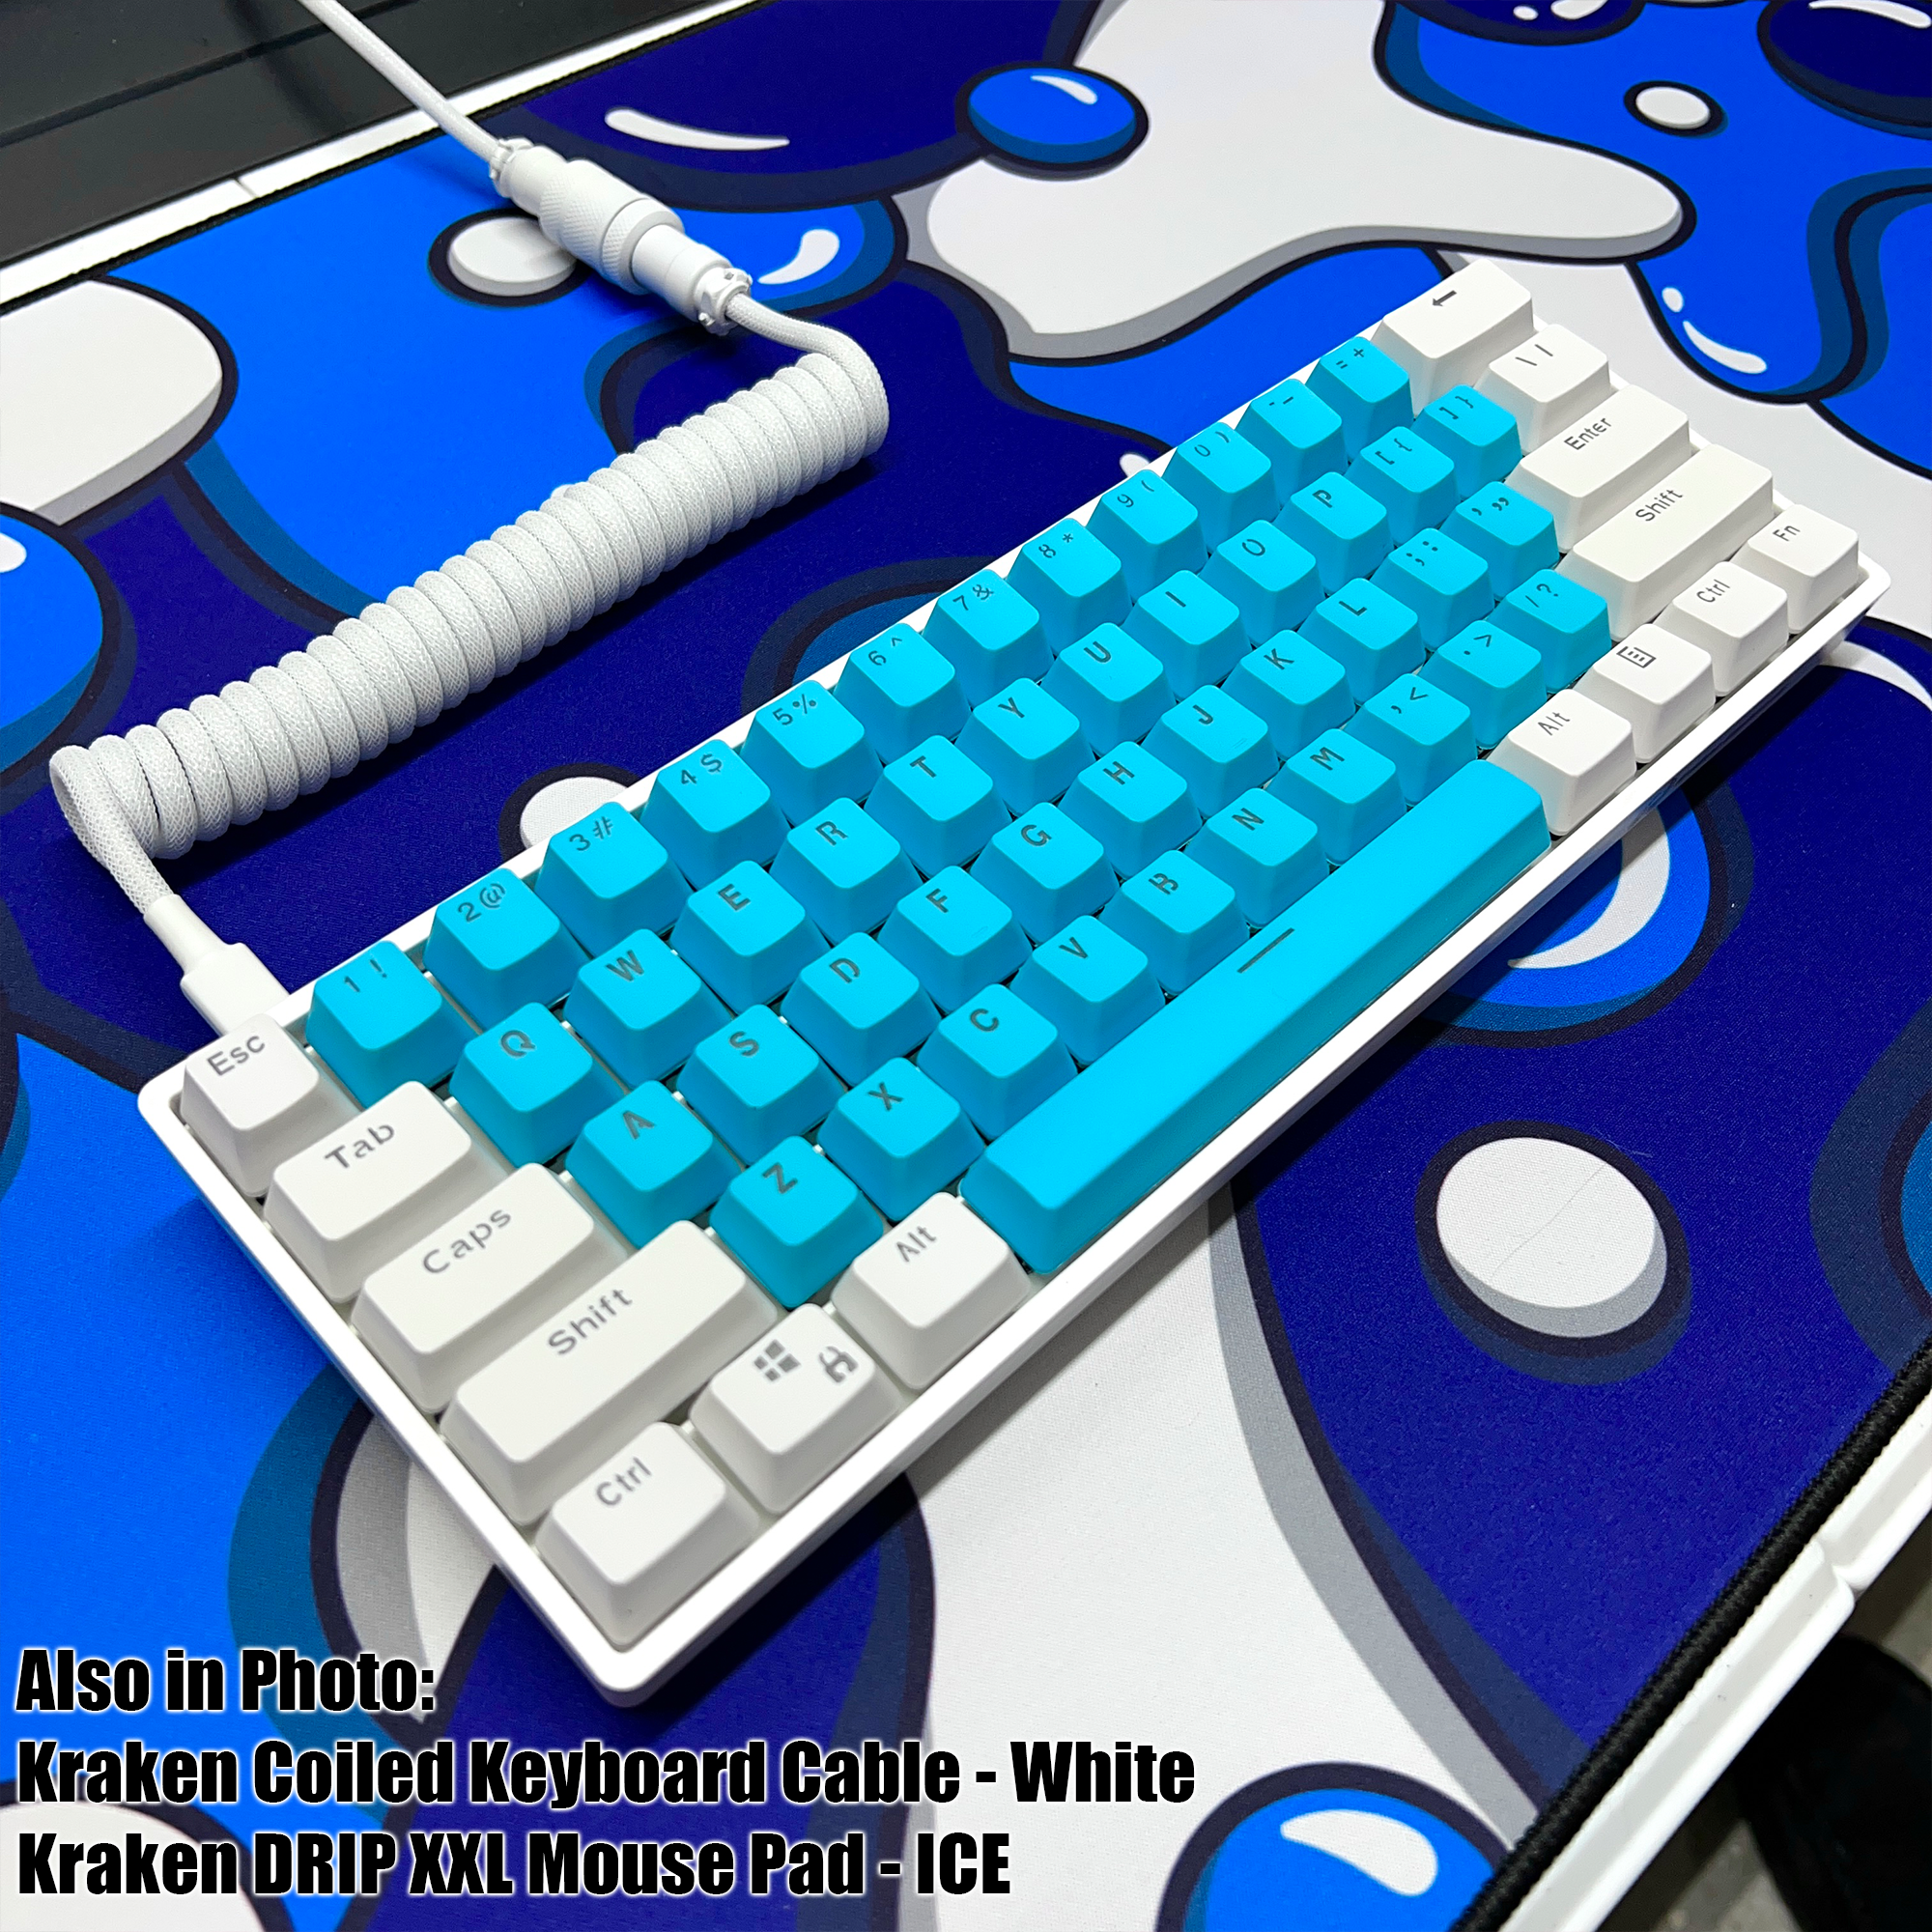 Kraken Pro 60  60% Mechanical Keyboard RGB Gaming Keyboard (Silver Speed  Switches) 